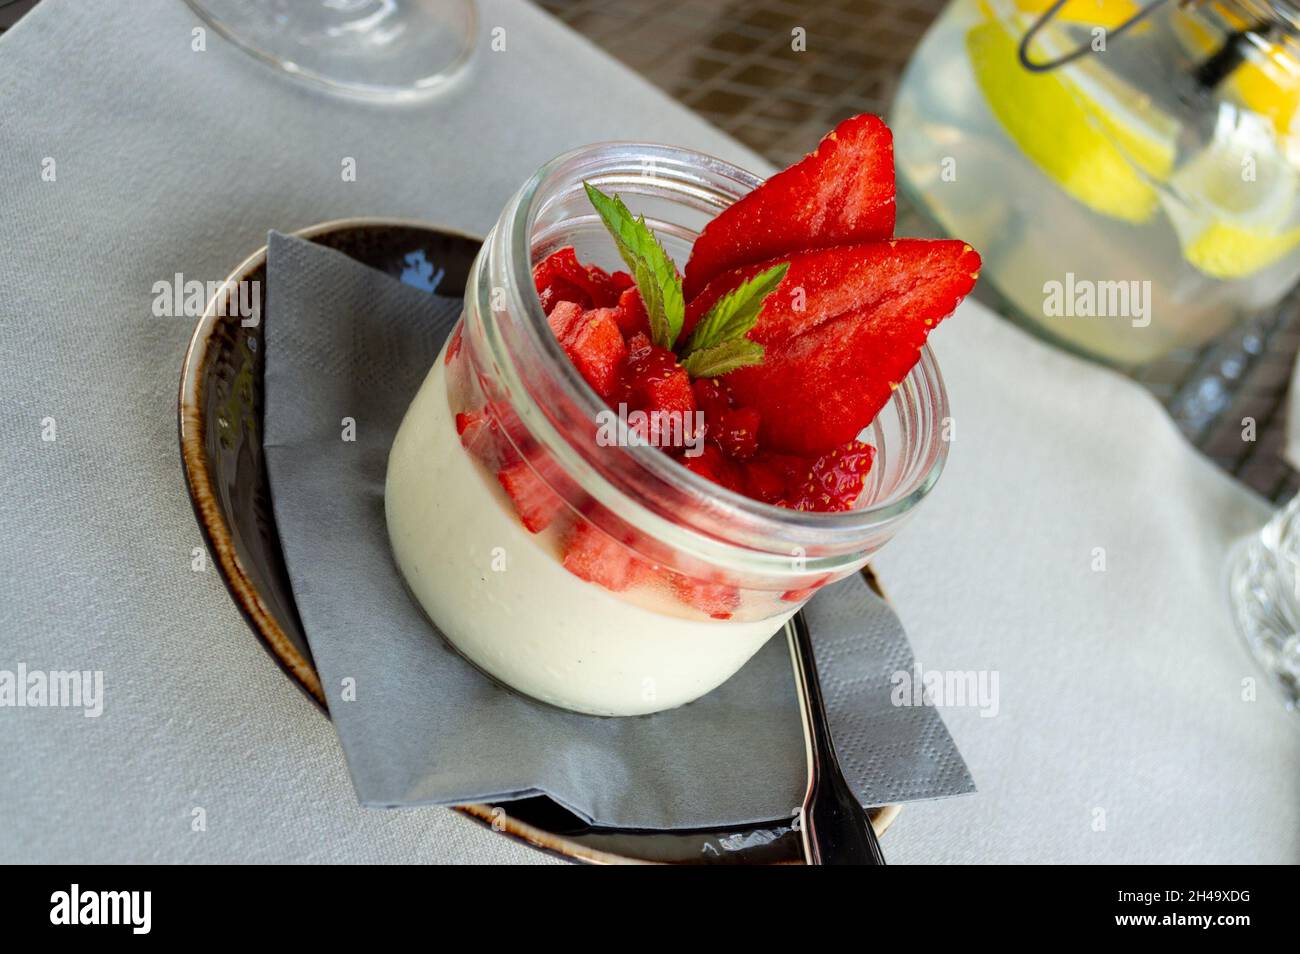 Panna cotta con fragola in cima - dessert italiano Foto Stock